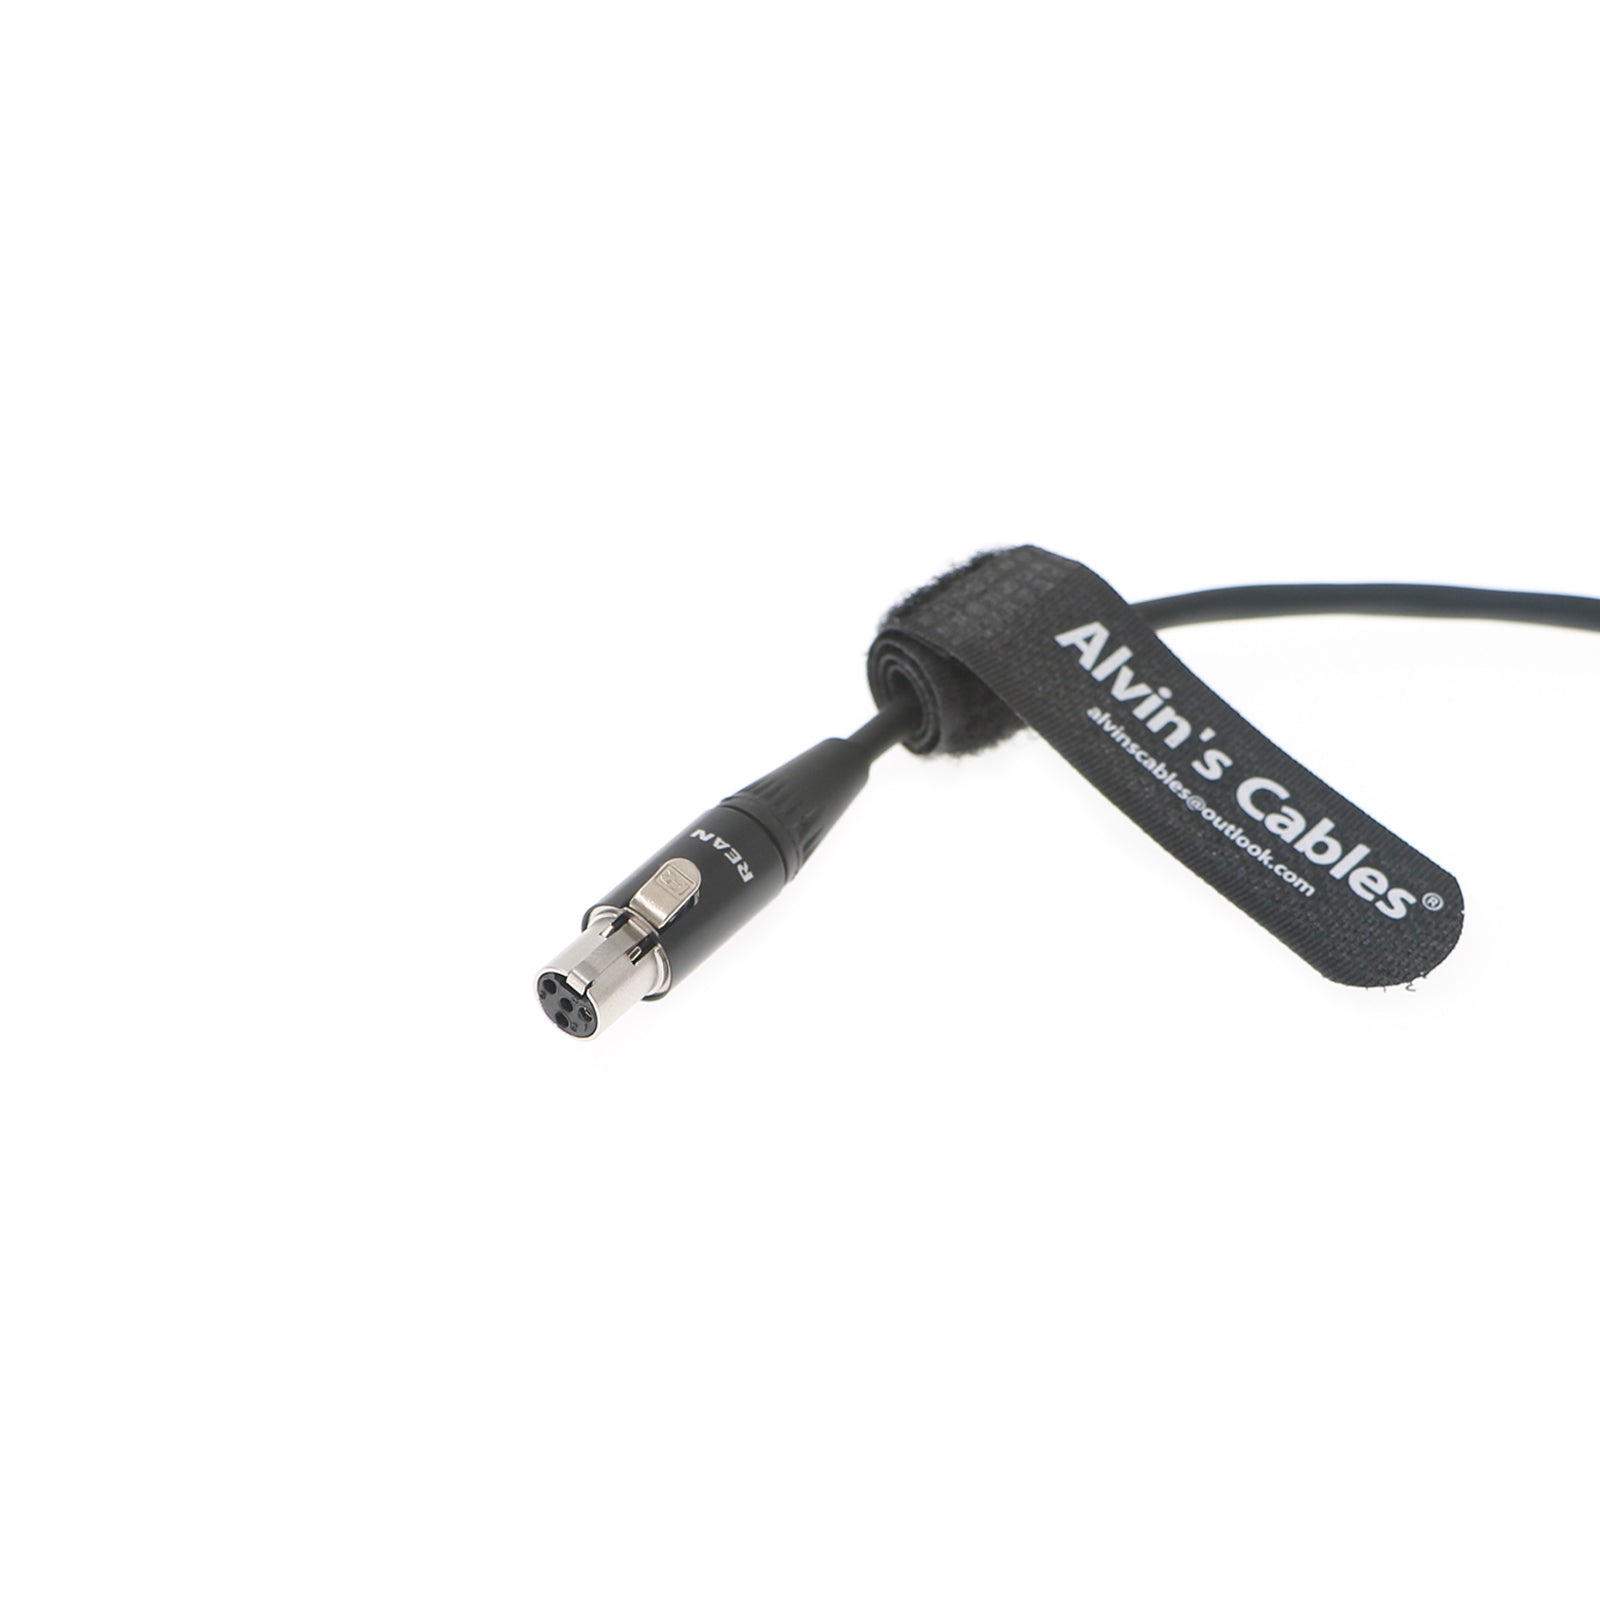 Stromkabel für TV Logic von Steadicam M-2 1B 5 Pin Stecker auf Mini XLR 4 Pin Buchse Kabel Alvin’s Cables 50cm|19.7inches